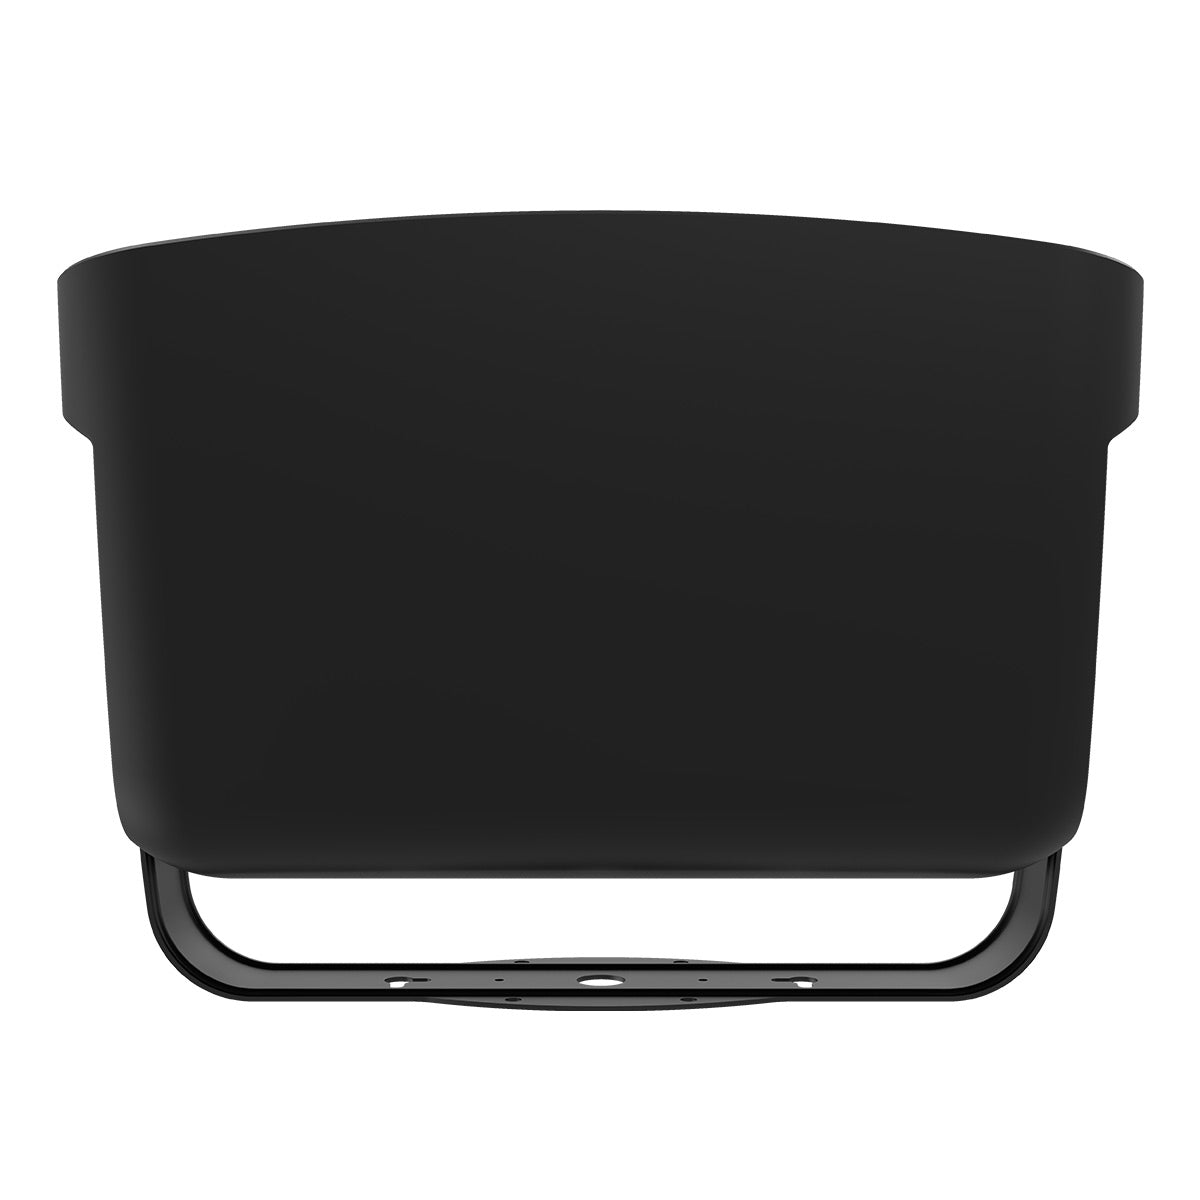 Klipsch RSM-800 Indoor/Outdoor Surface Mount Speakers with 8" Woofer - Pair (Black)